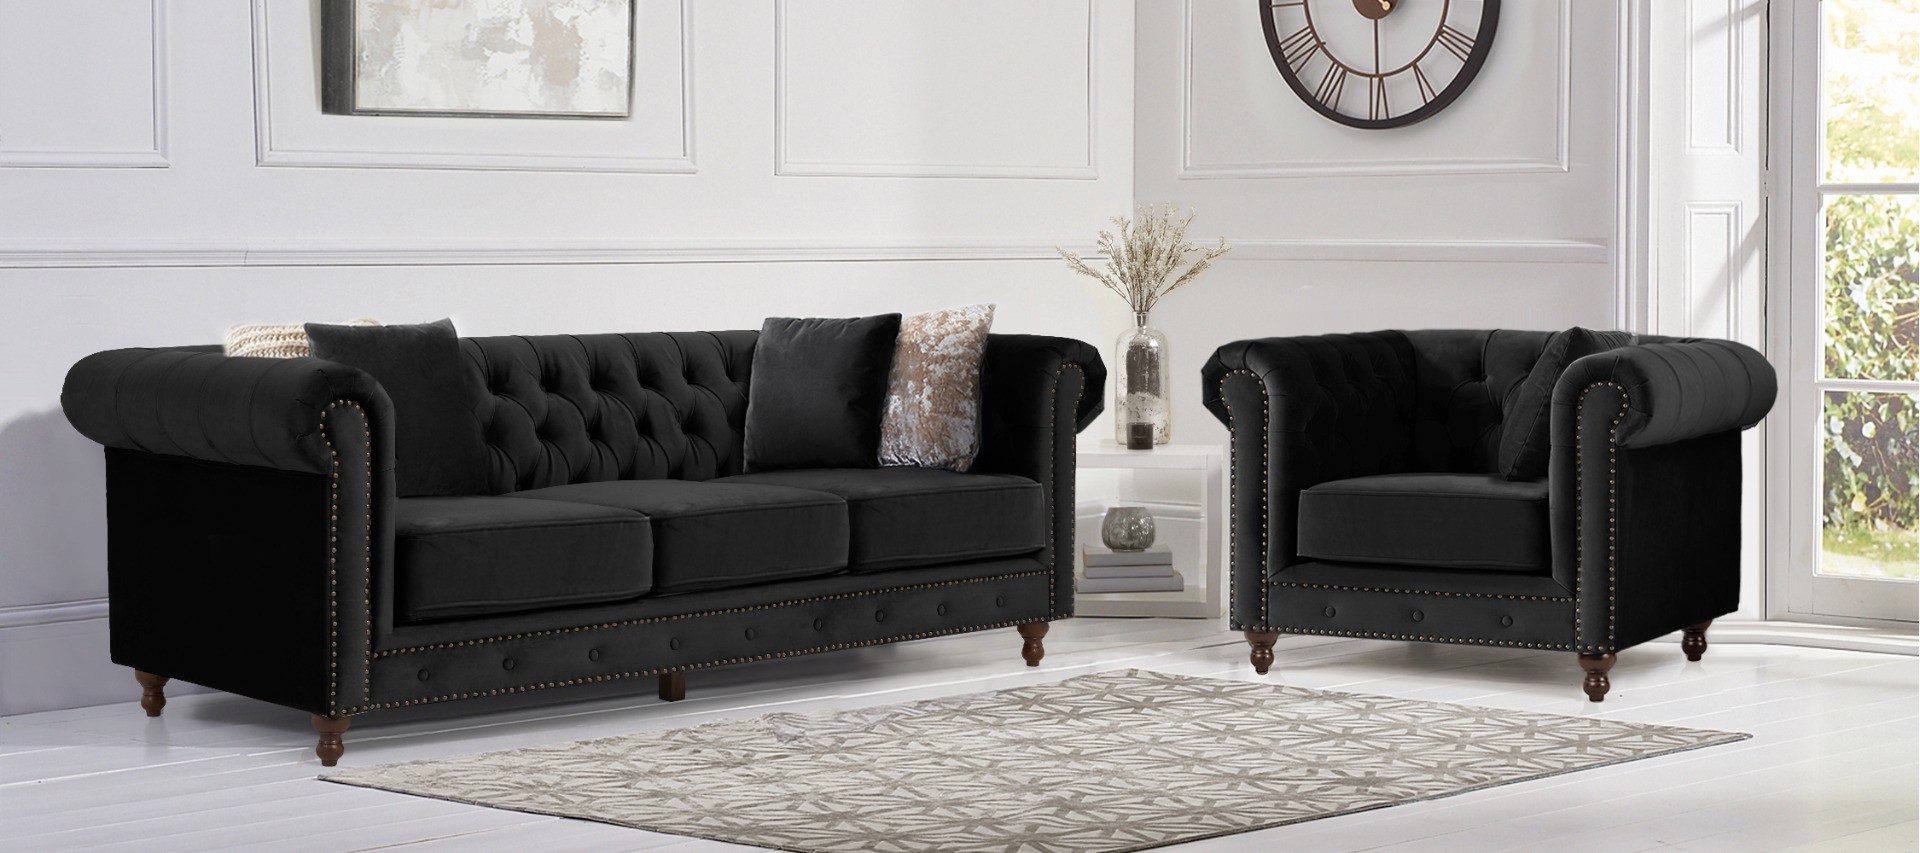 Photo 3 of Westminster chesterfield black velvet 2 seater sofa